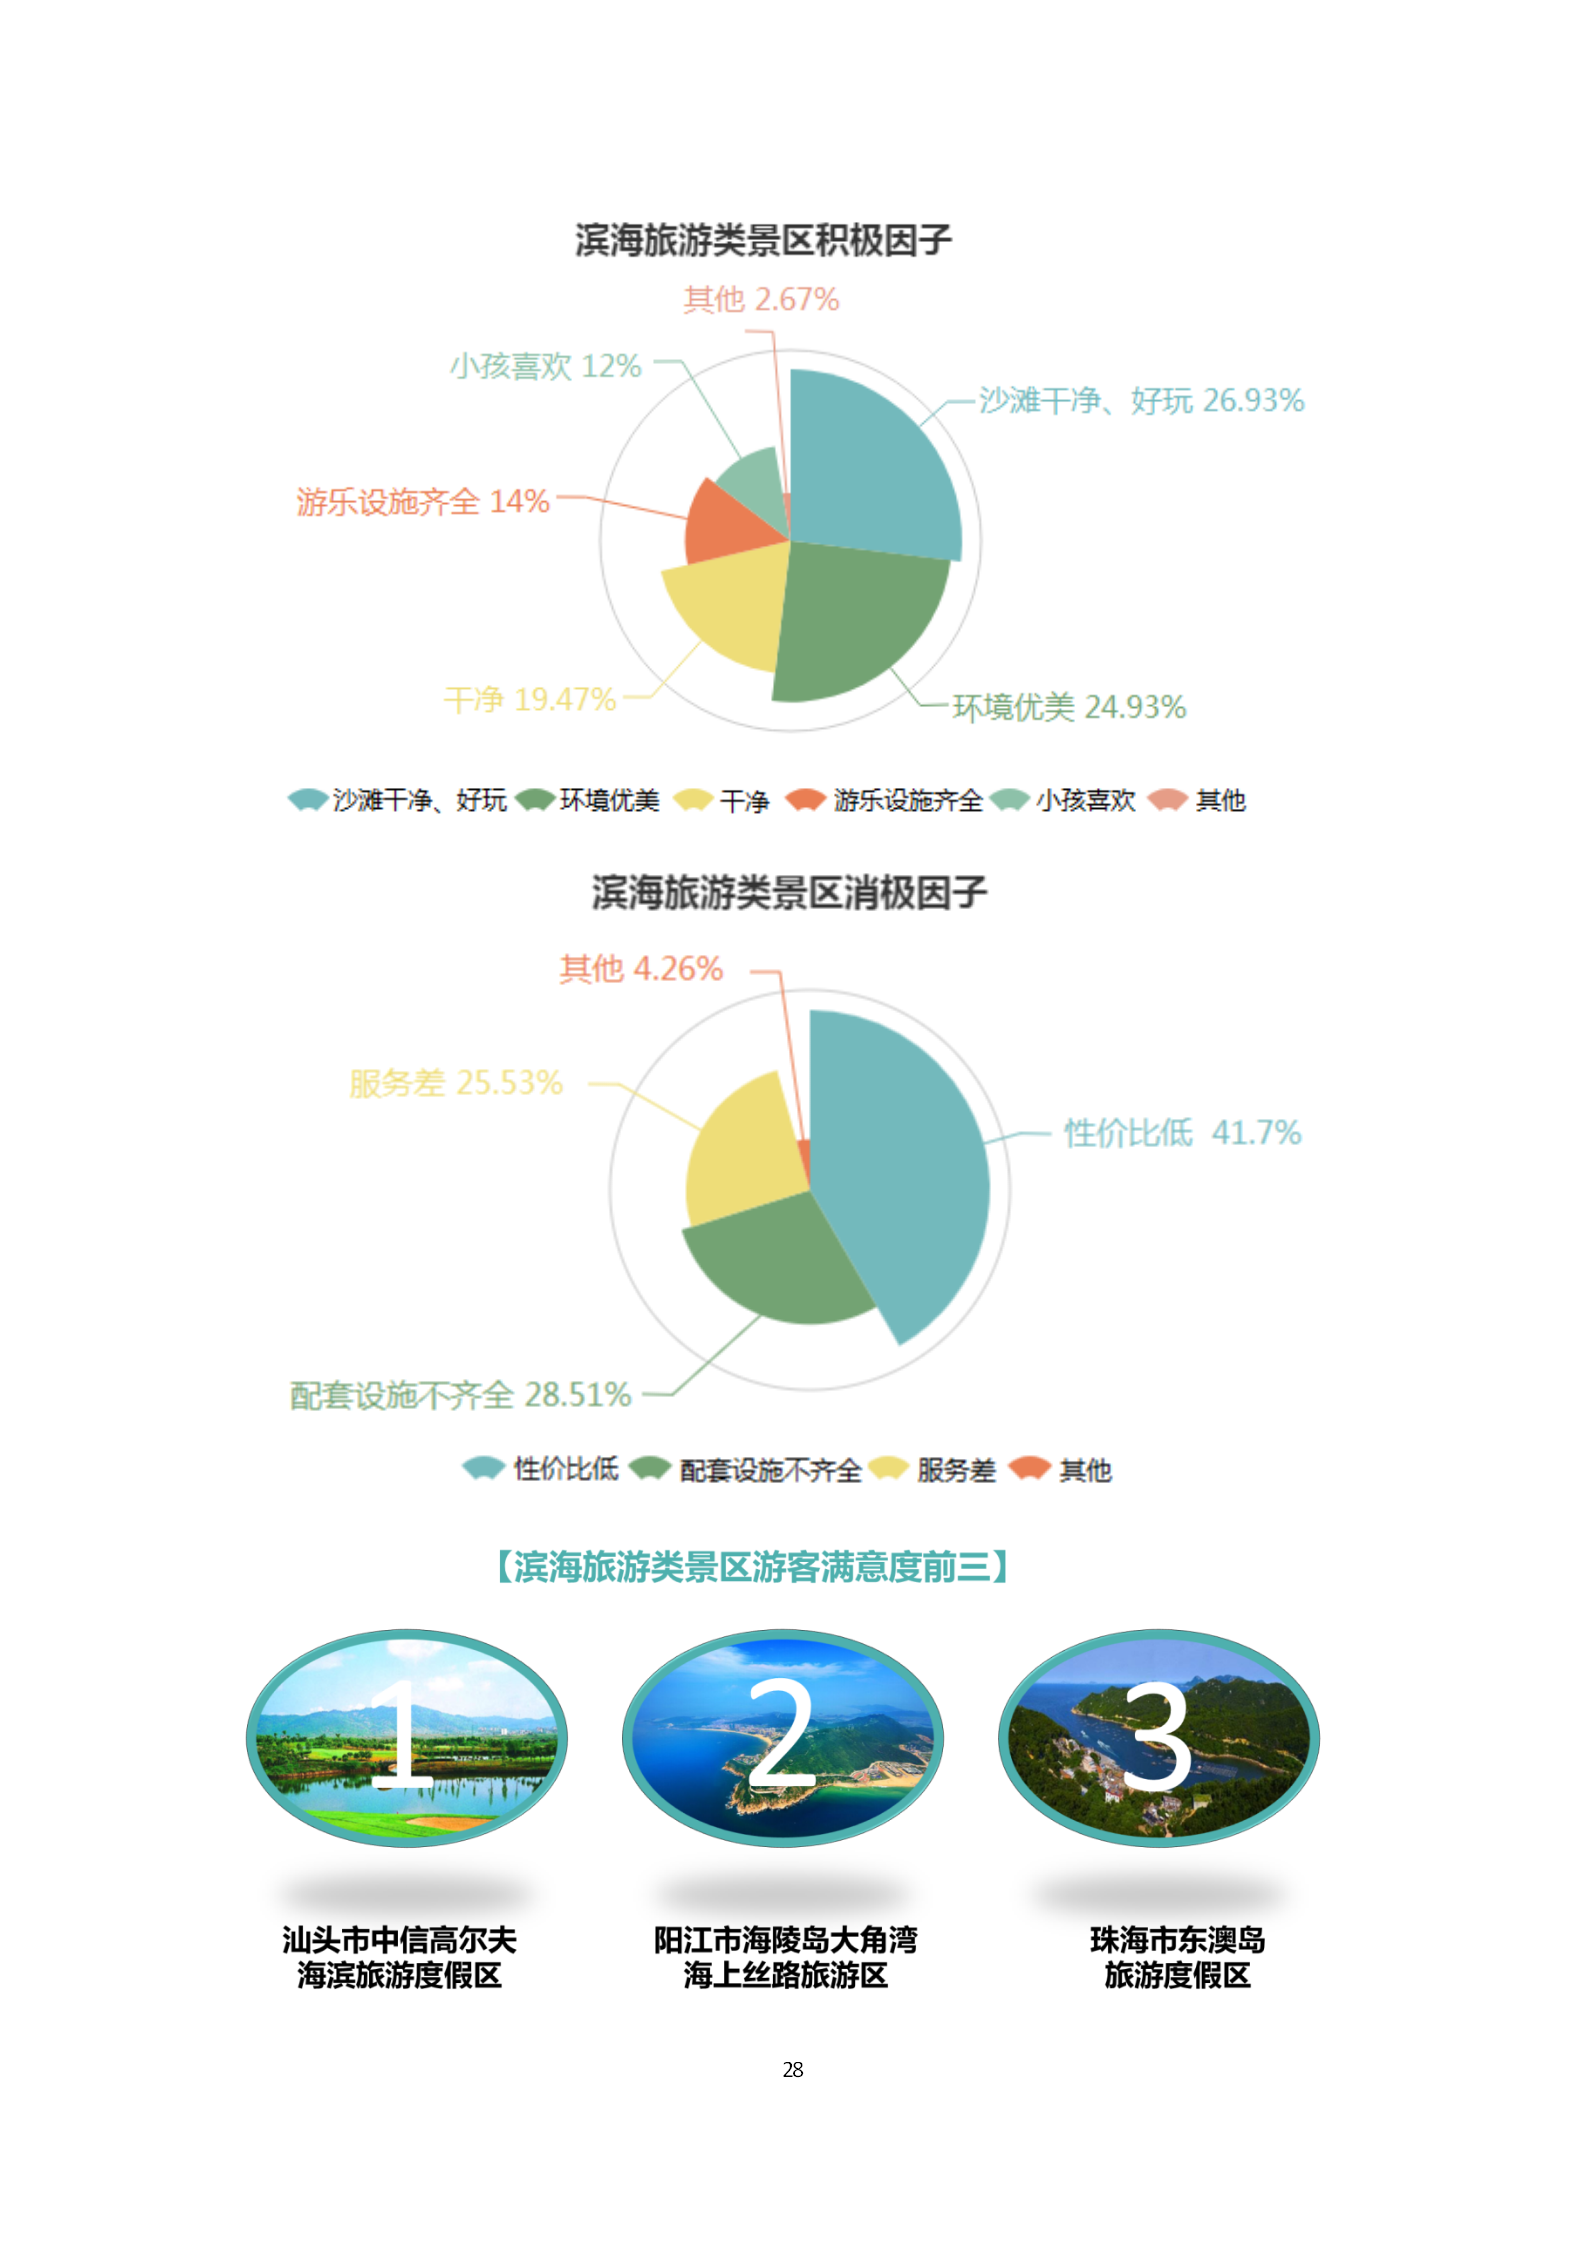 广东省旅游景区游客满意度大数据调查报告-2018年第三季度20181106_29